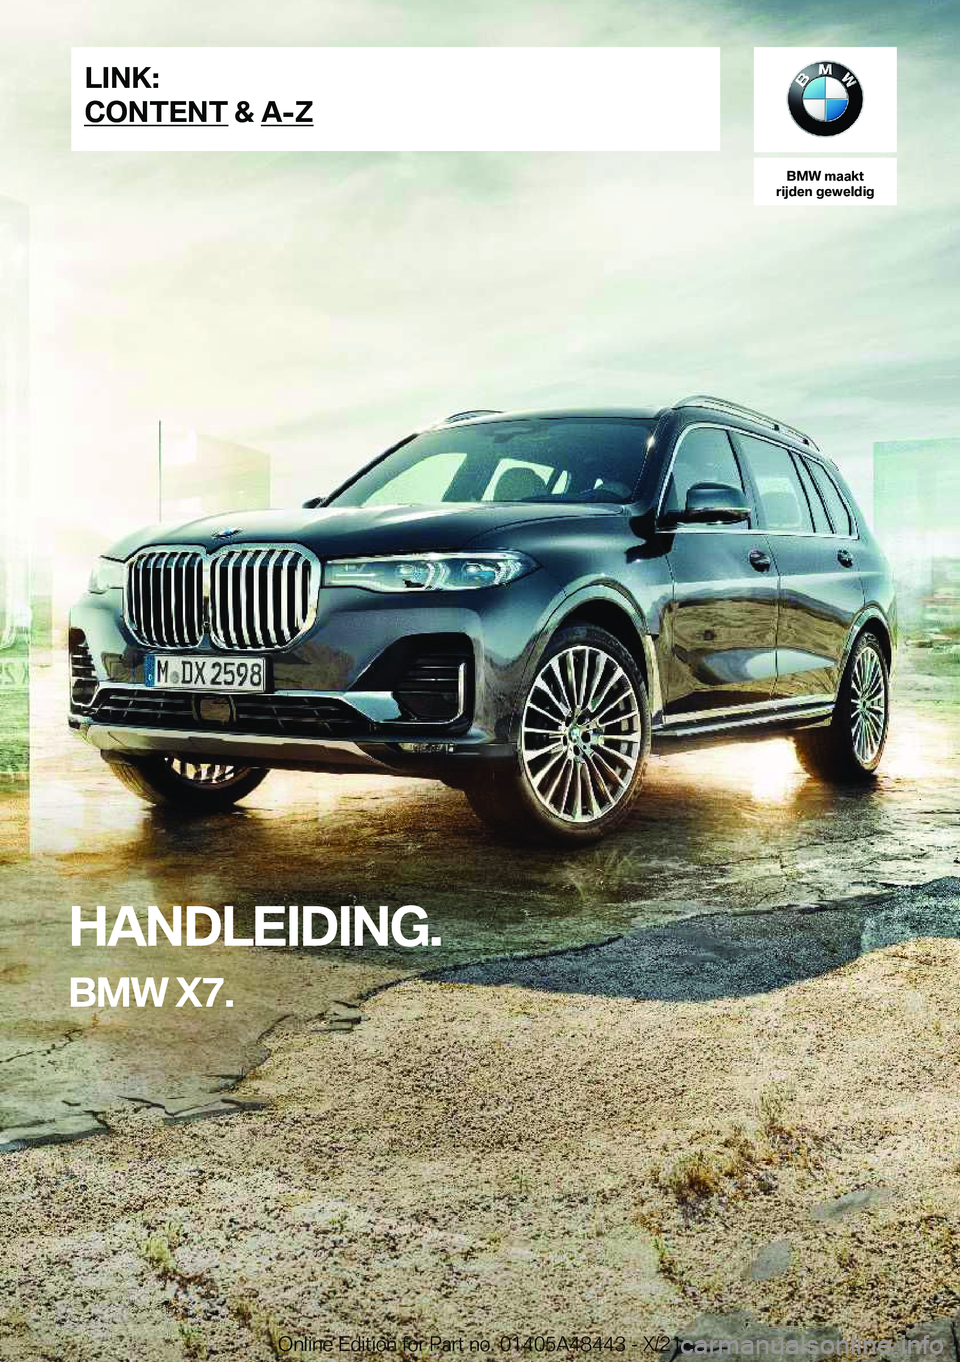 BMW X7 2022  Instructieboekjes (in Dutch) �B�M�W��m�a�a�k�t
�r�i�j�d�e�n��g�e�w�e�l�d�i�g
�H�A�N�D�L�E�I�D�I�N�G�.
�B�M�W��X�7�.�L�I�N�K�:
�C�O�N�T�E�N�T��&��A�-�Z�O�n�l�i�n�e��E�d�i�t�i�o�n��f�o�r��P�a�r�t��n�o�.��0�1�4�0�5�A�4�8�4